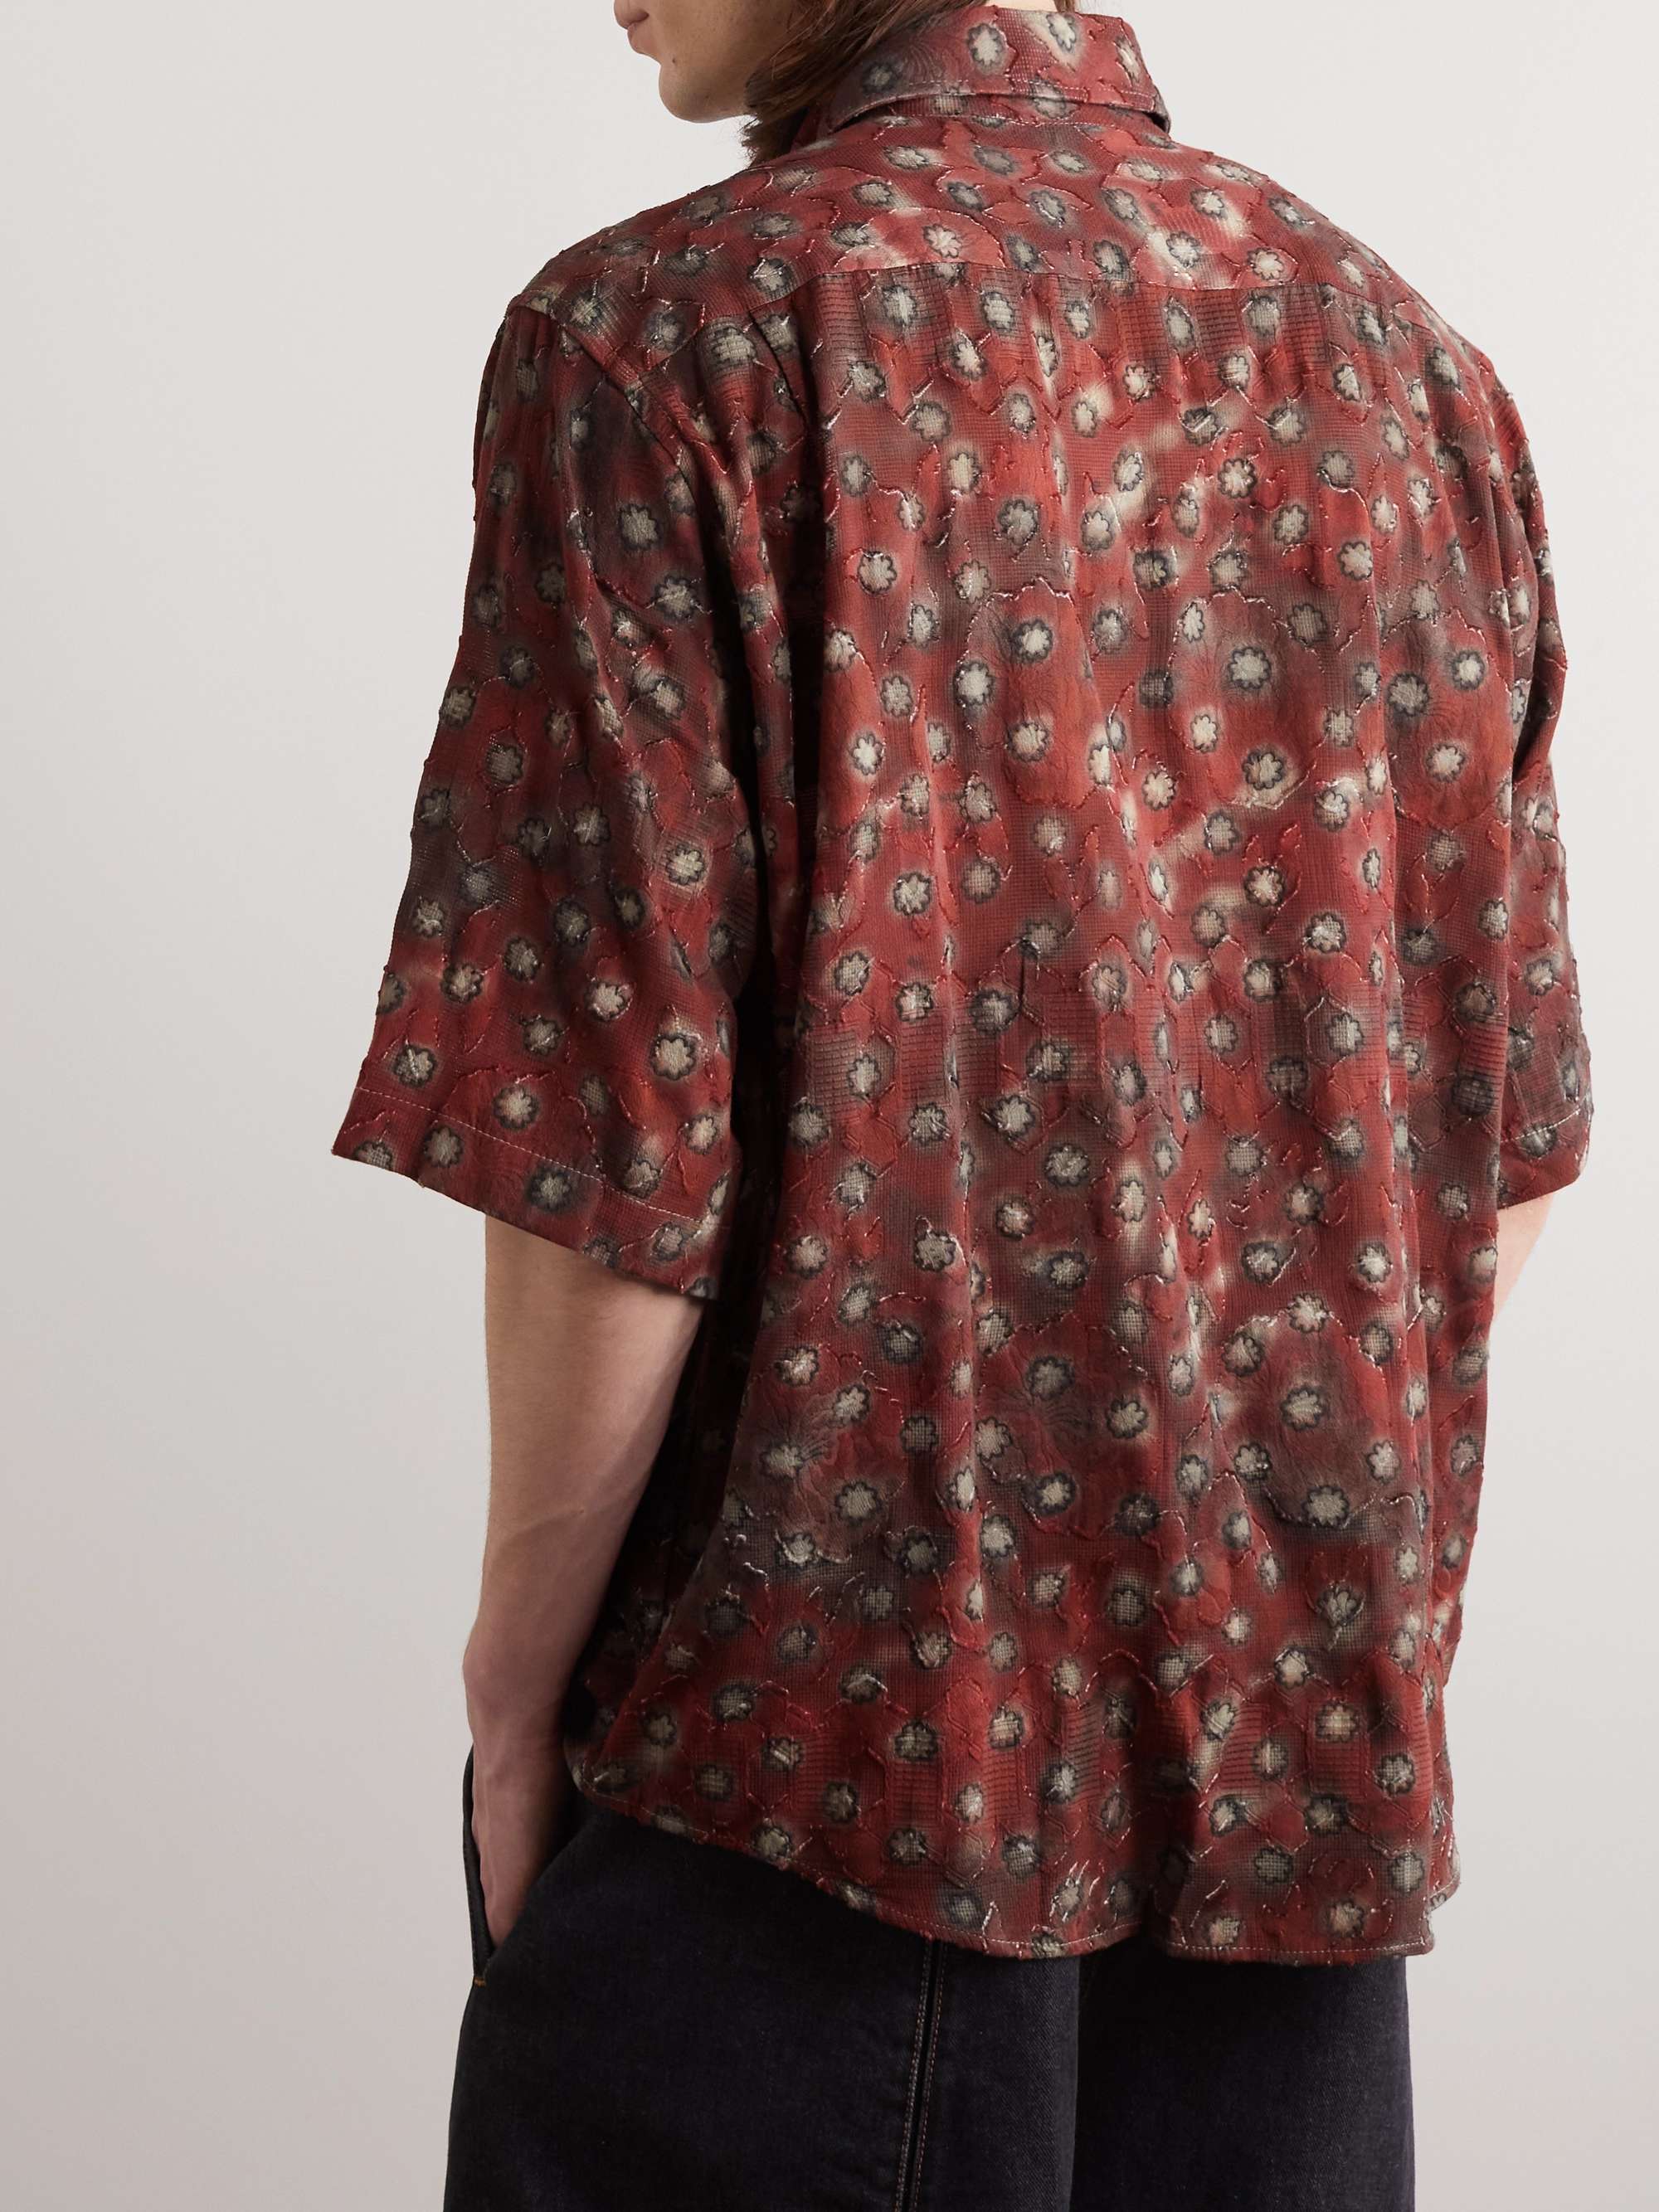 ACNE STUDIOS Sambler Floral-Print Cotton Fil Coupé Shirt